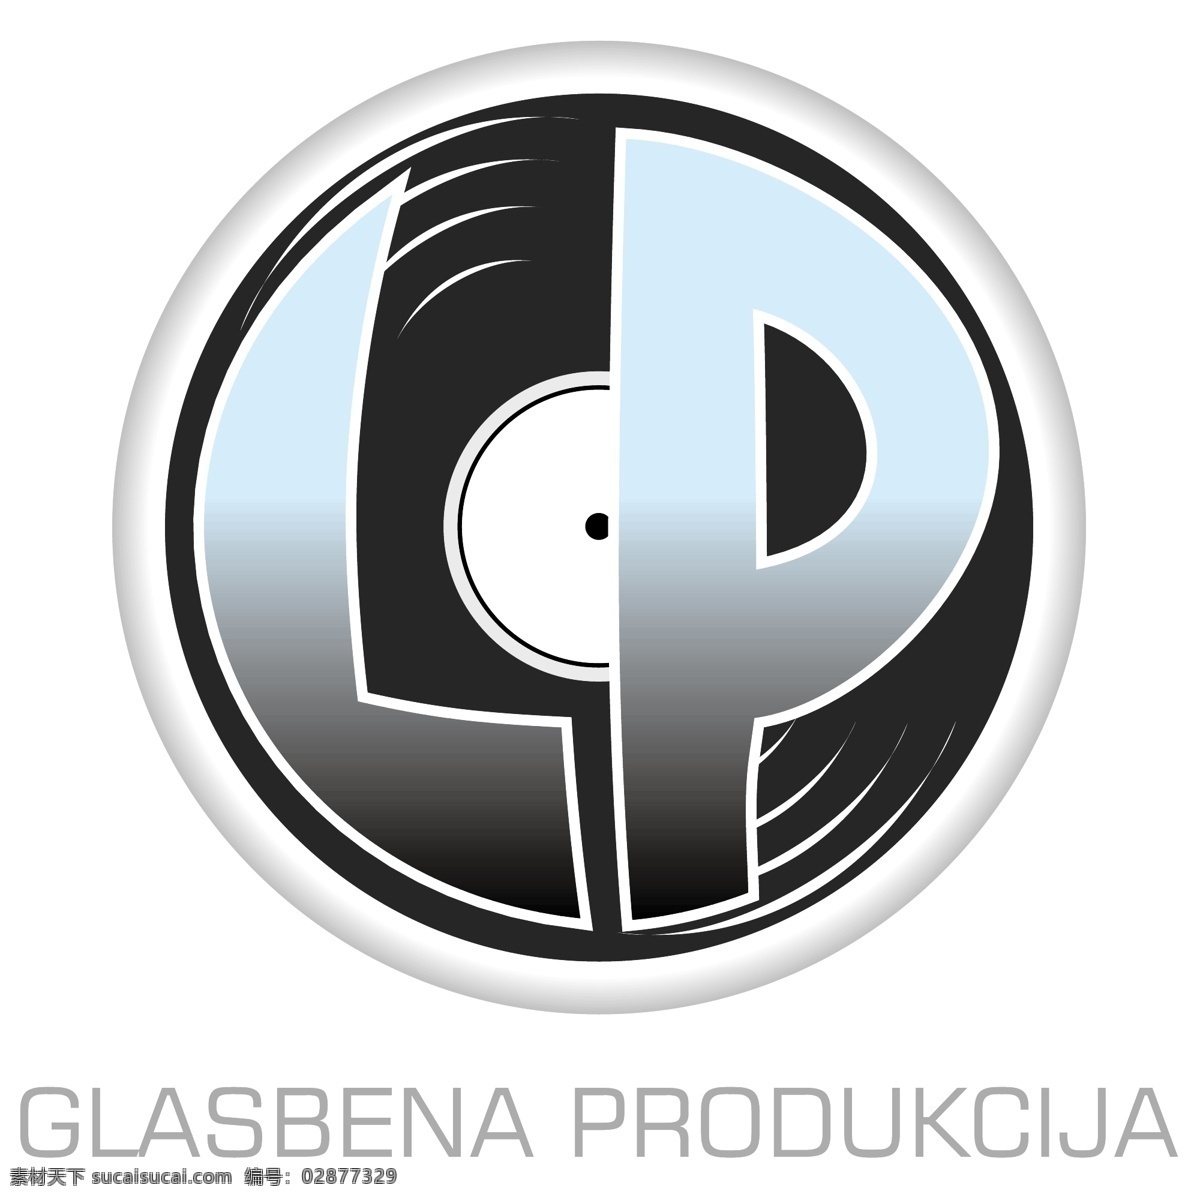 唱片公司 glasbena d o 免费的lp 公司 标志 免费 白色